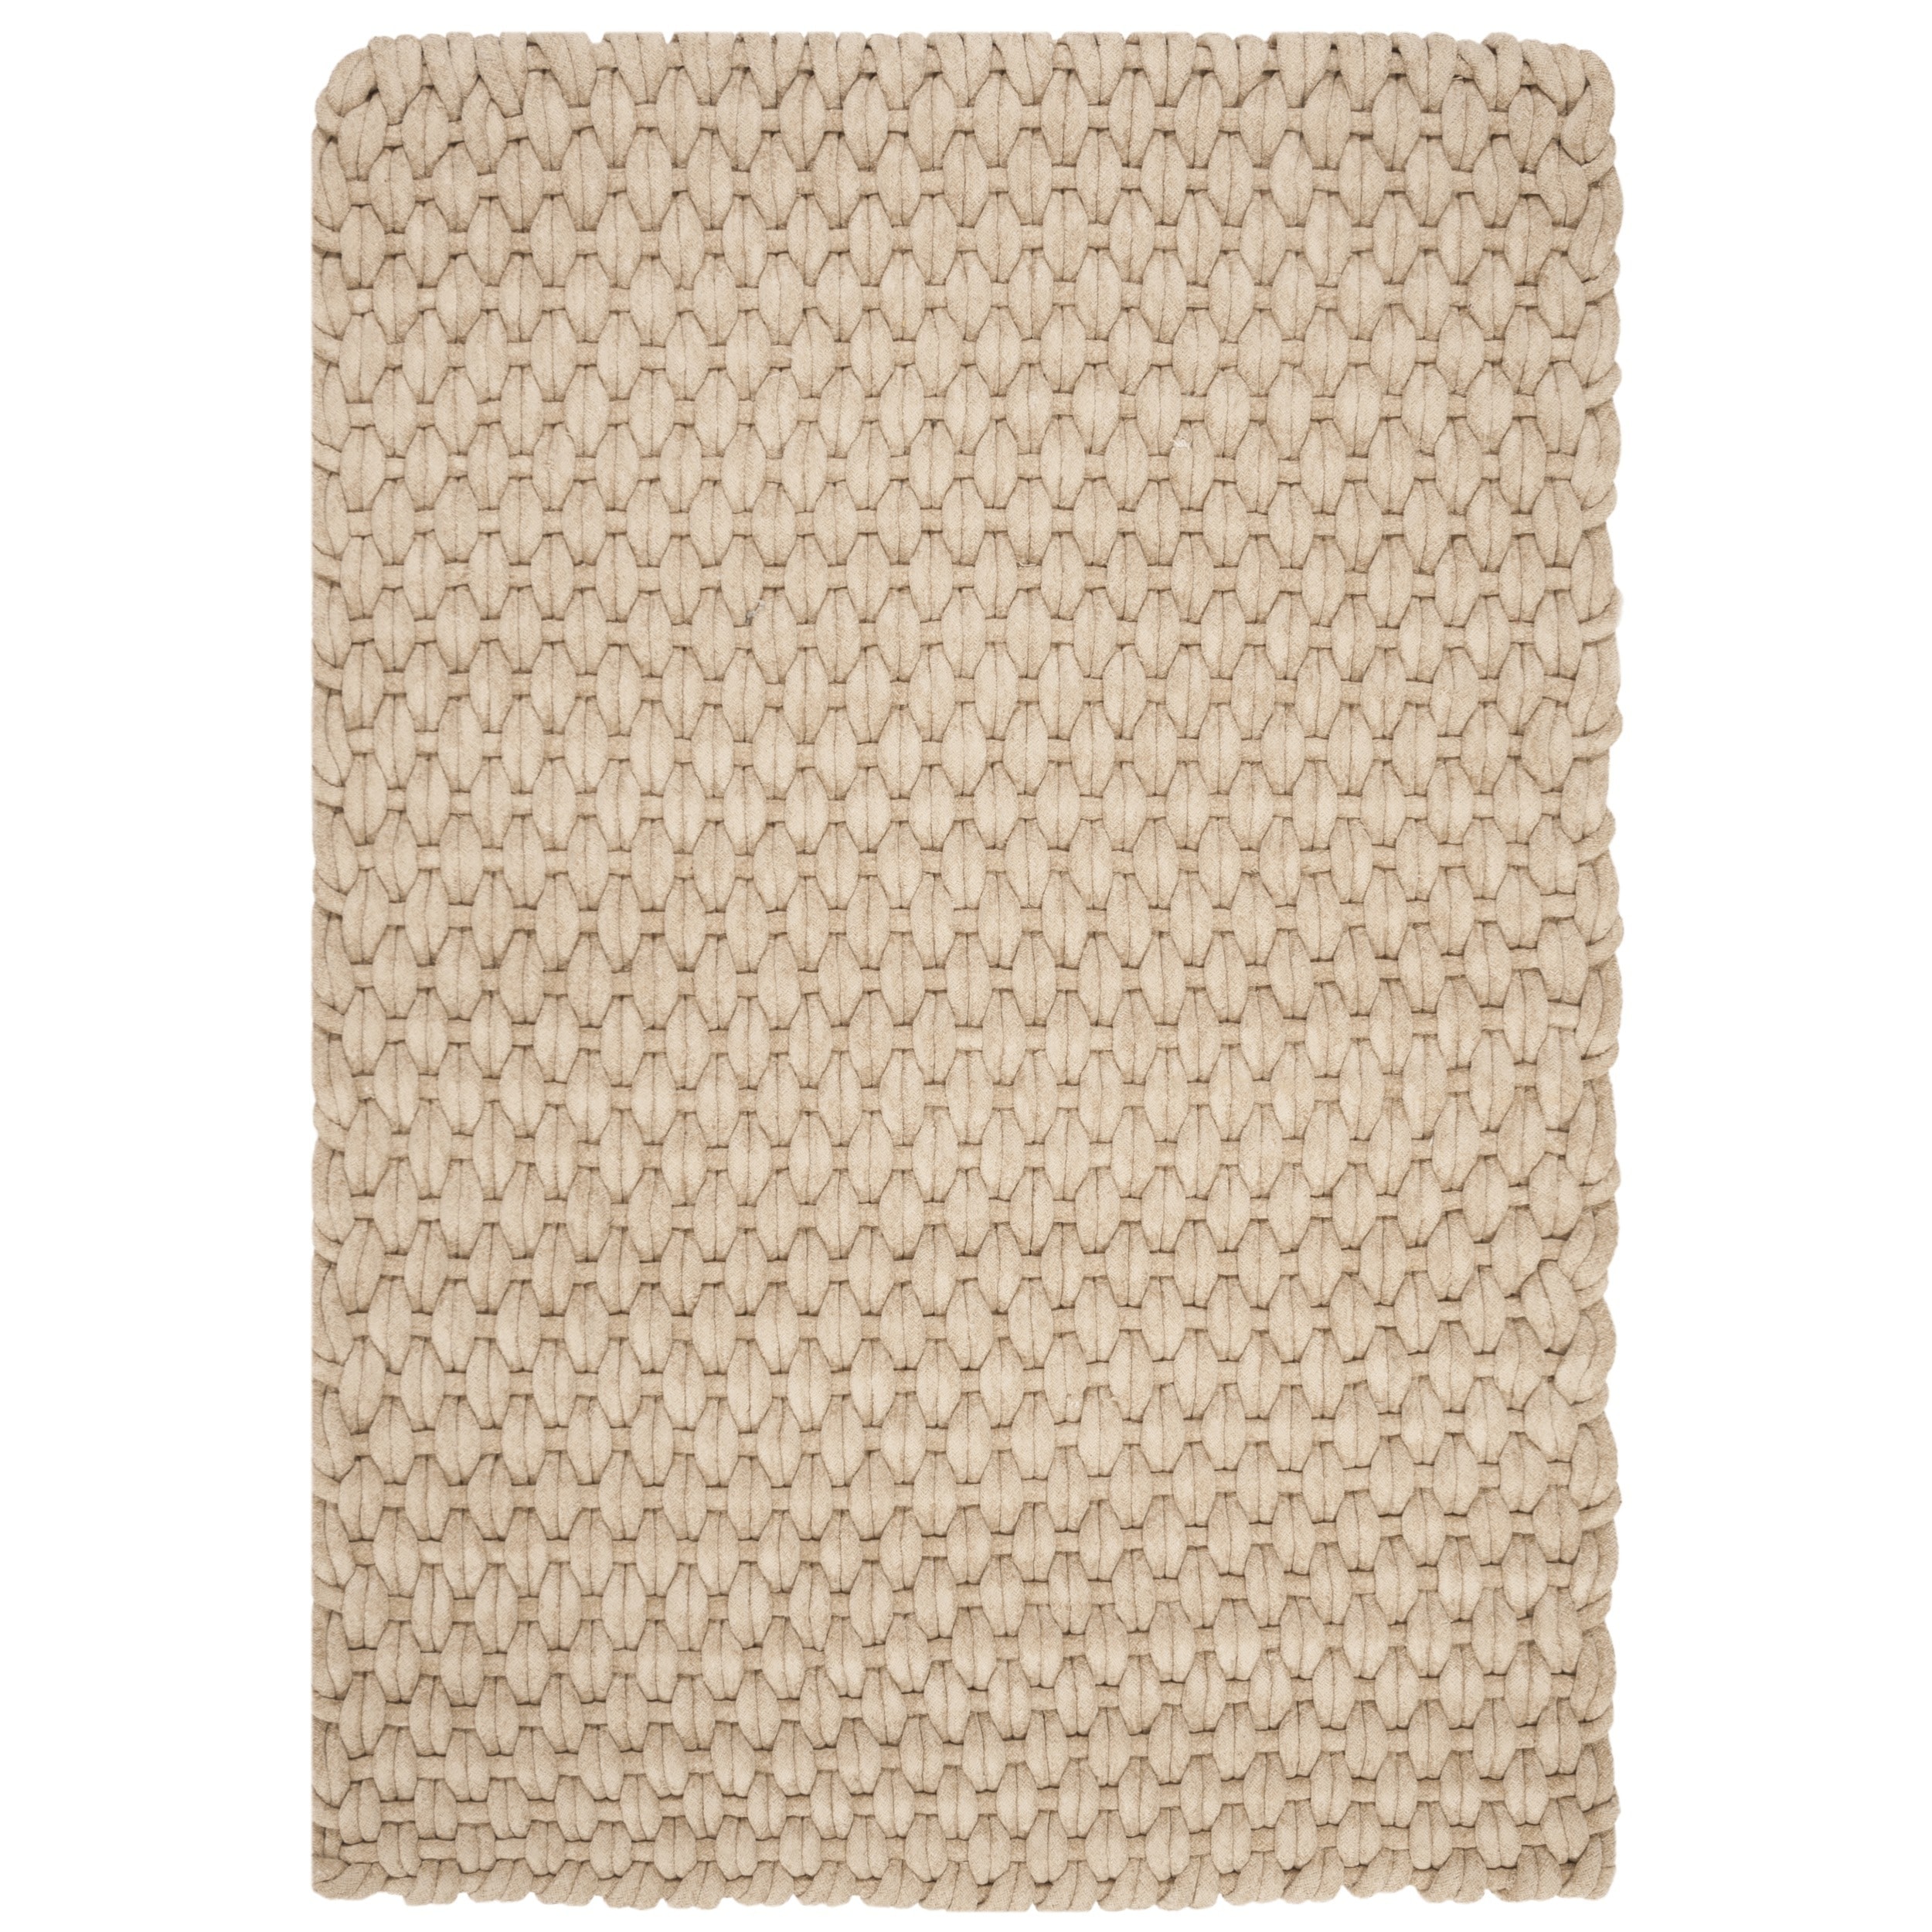 Safavieh Hand woven Manhattan Beige Wool Rug (6 X 9)